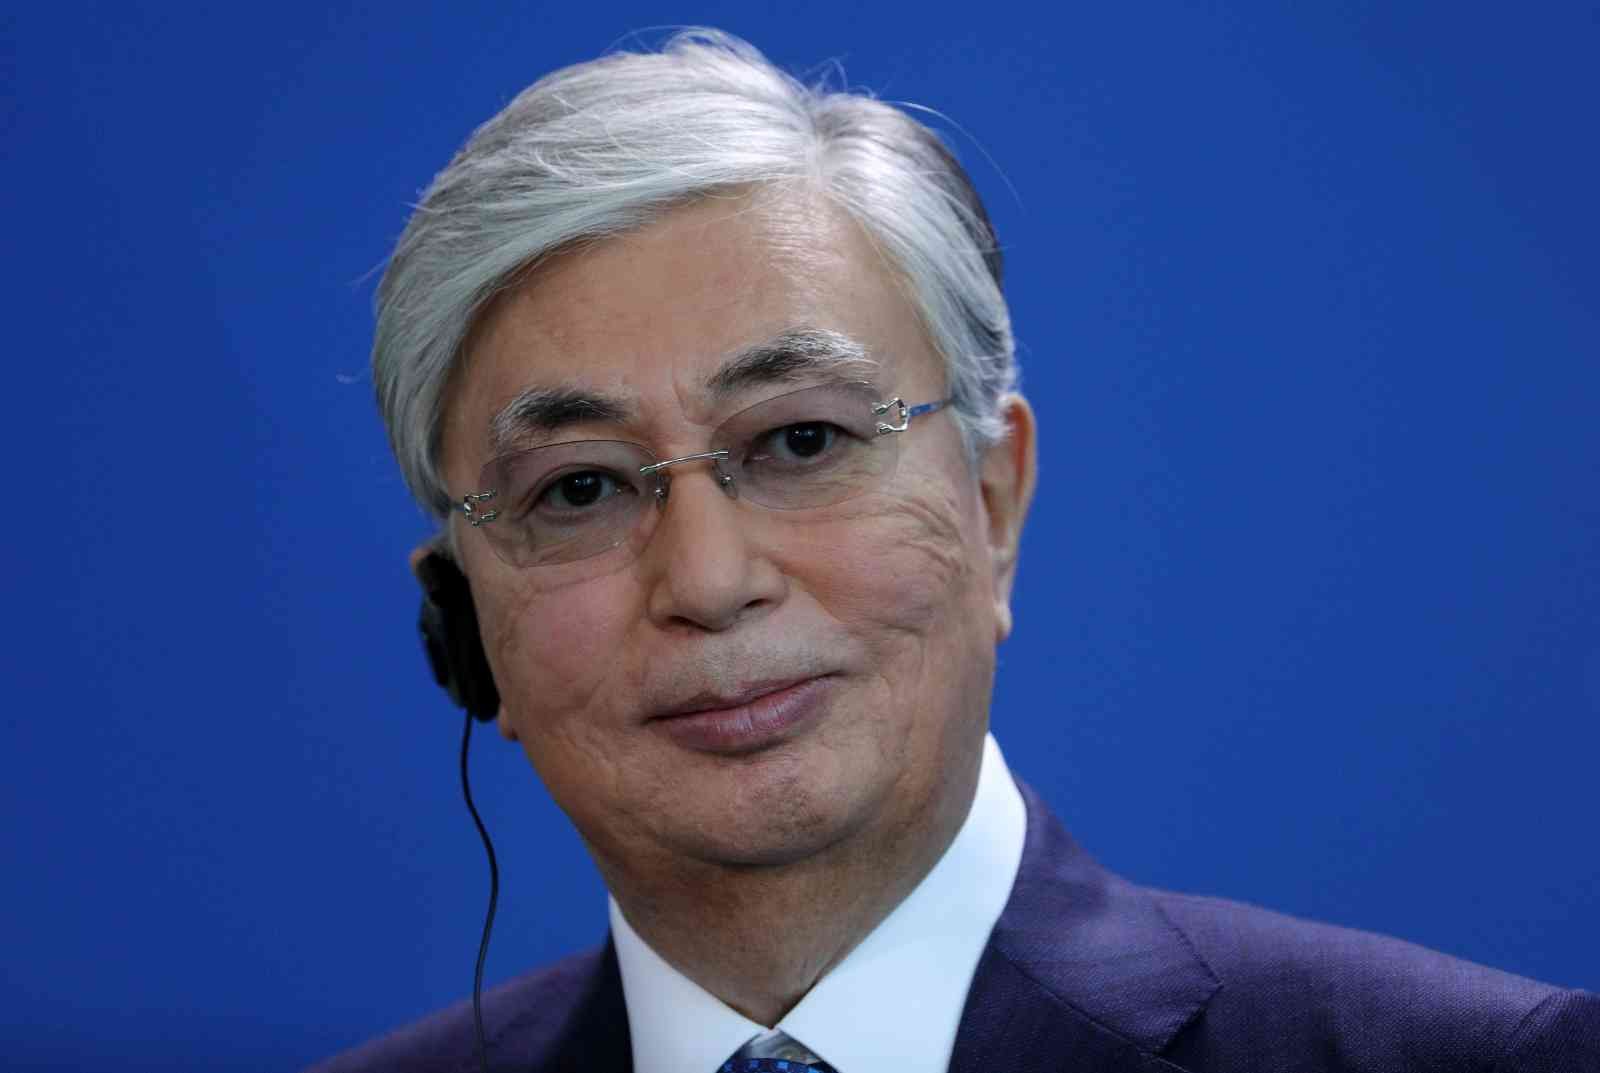 Kazakistan Cumhurbaşkanı Tokayev, gelecek ay Türkiye’yi ziyaret edecek